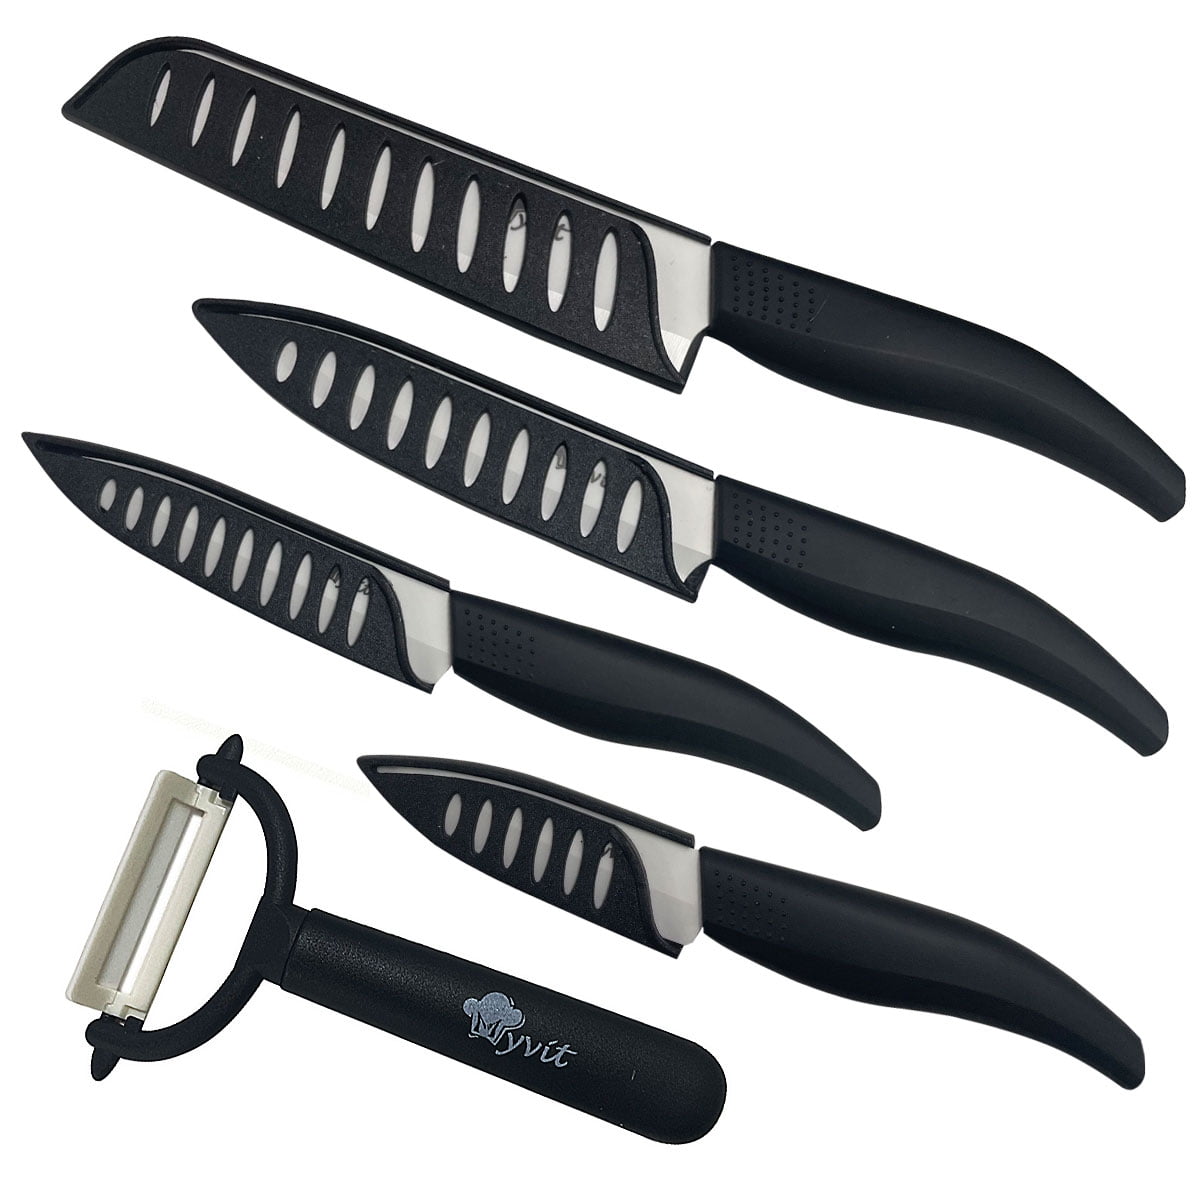 6 Piece Kitchen Knife Set with Sheaths Black Set Ceramic Knife 8 Chef Knife,  8 Slicer Knife,7 Larger Cleaver,5 Utility Knife, One Peeler,Scissors 